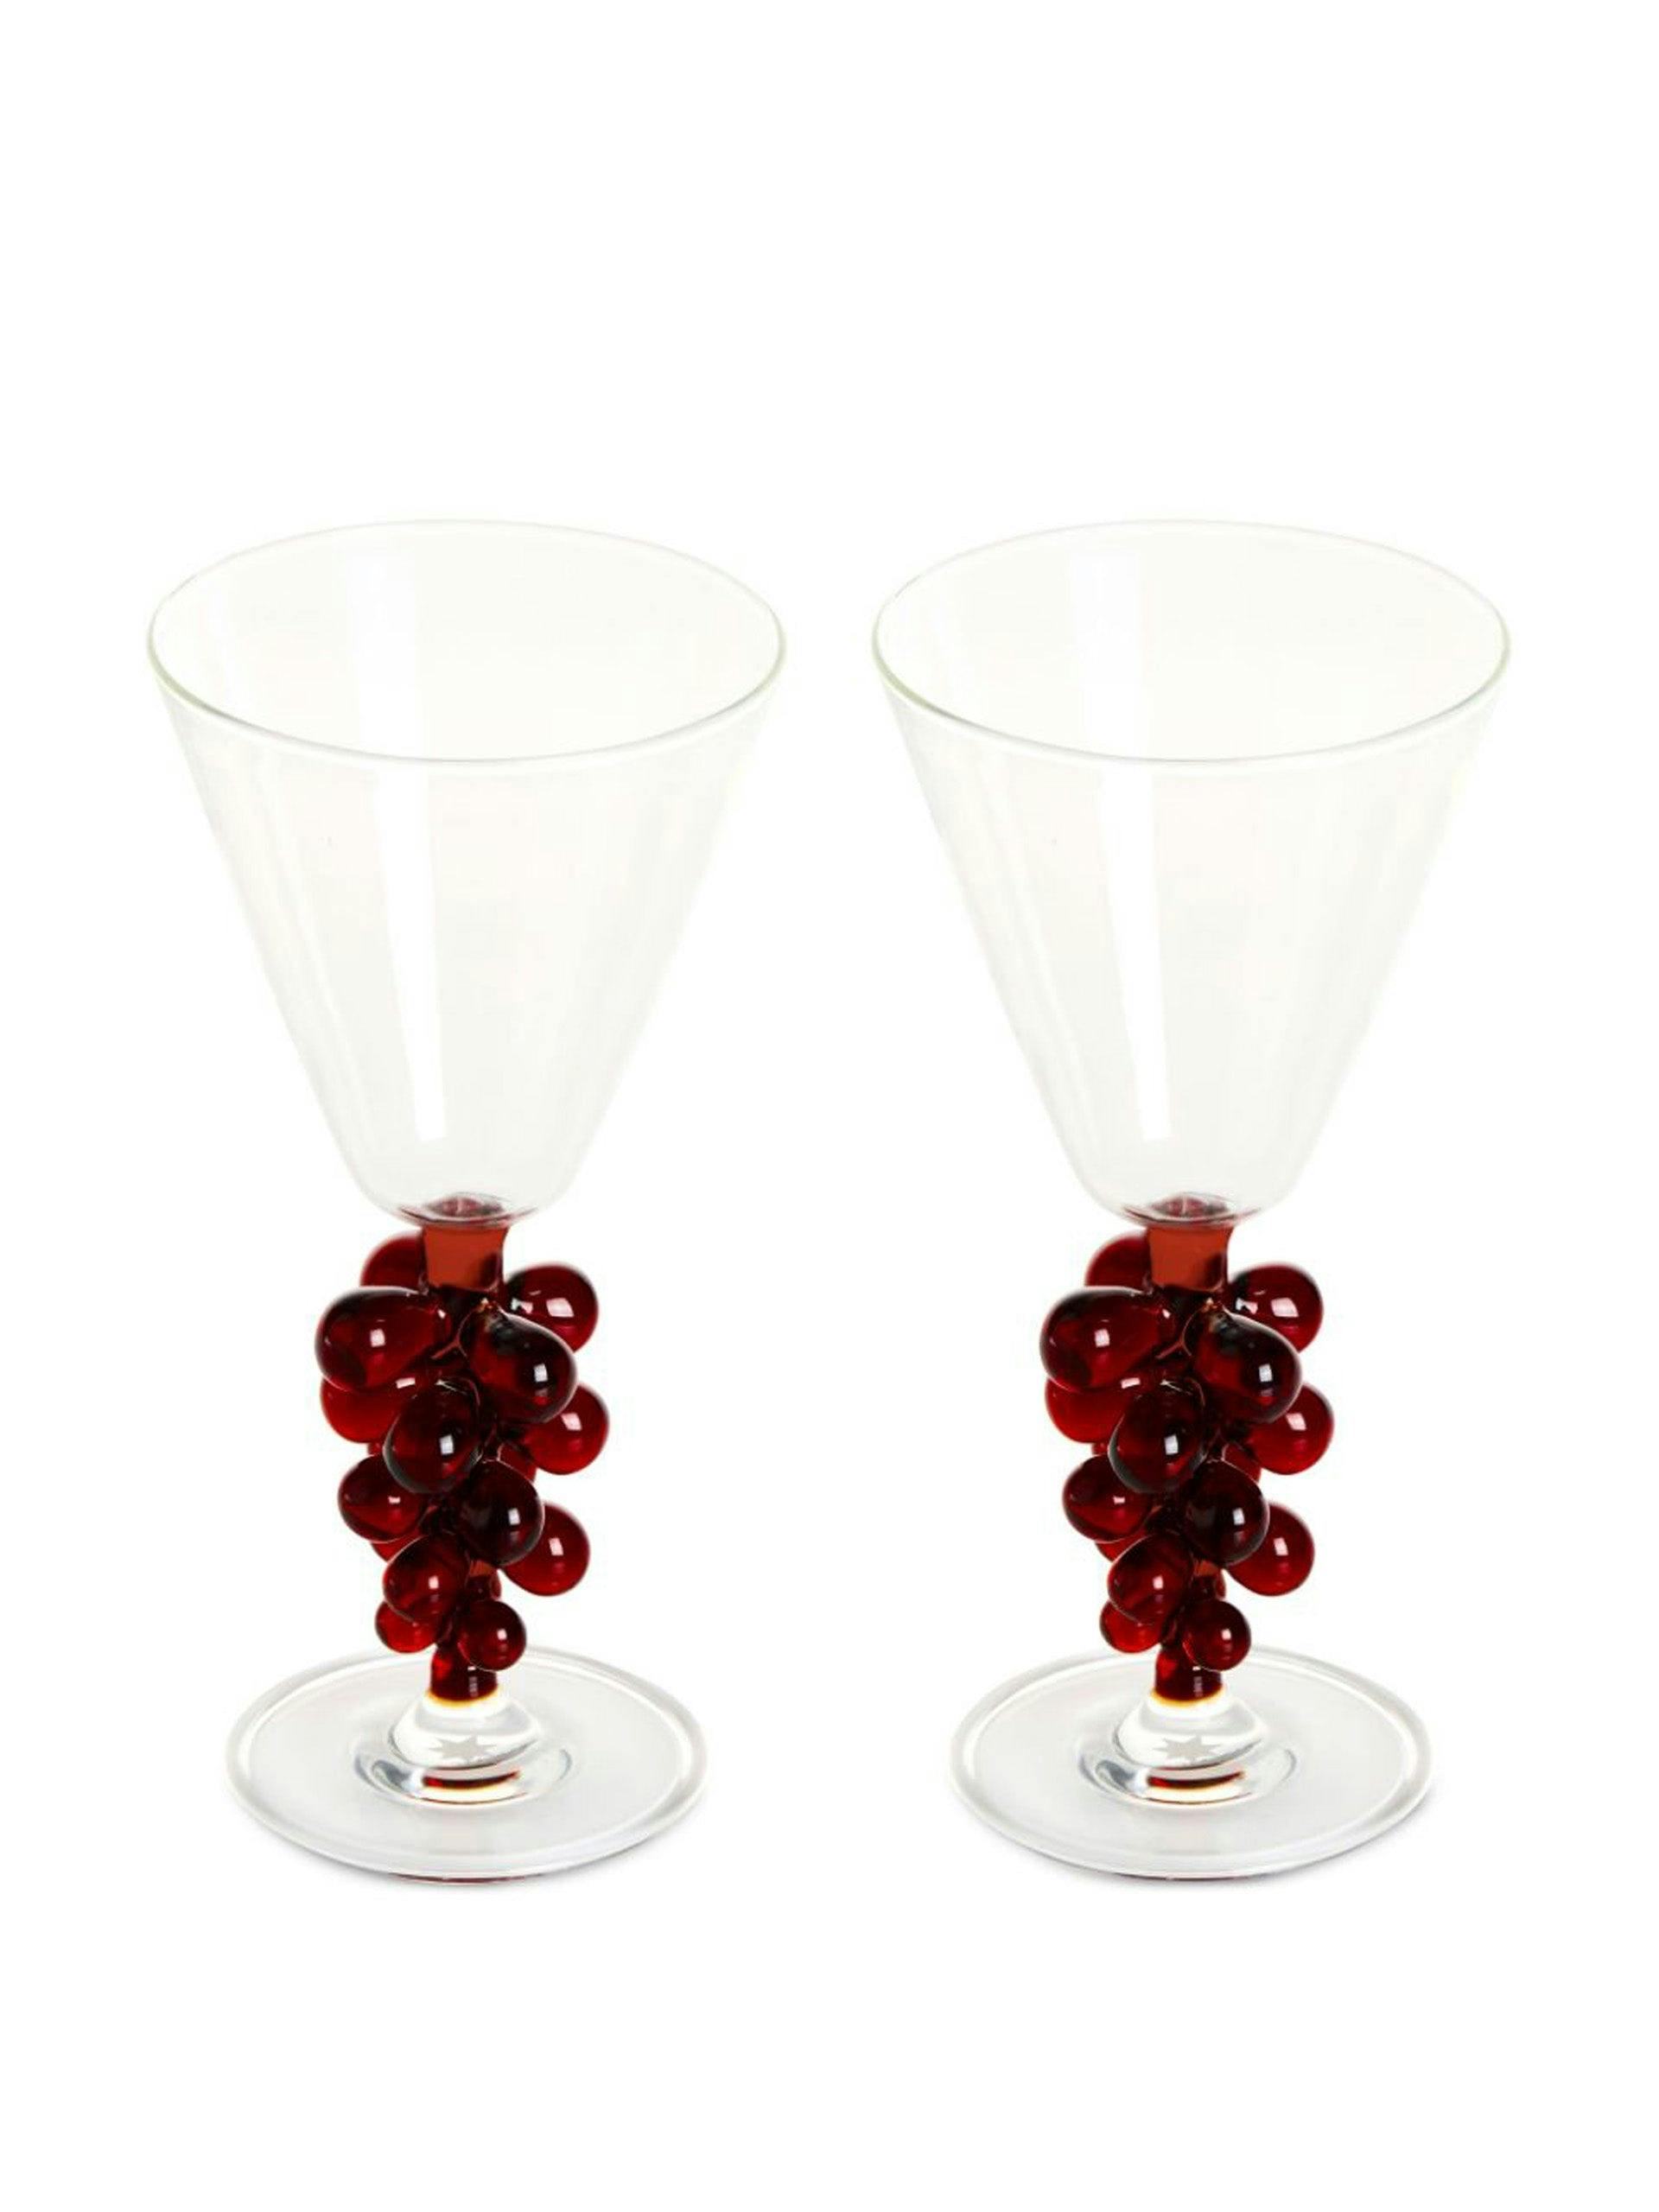 Bordeaux wine glasses (set of 2)